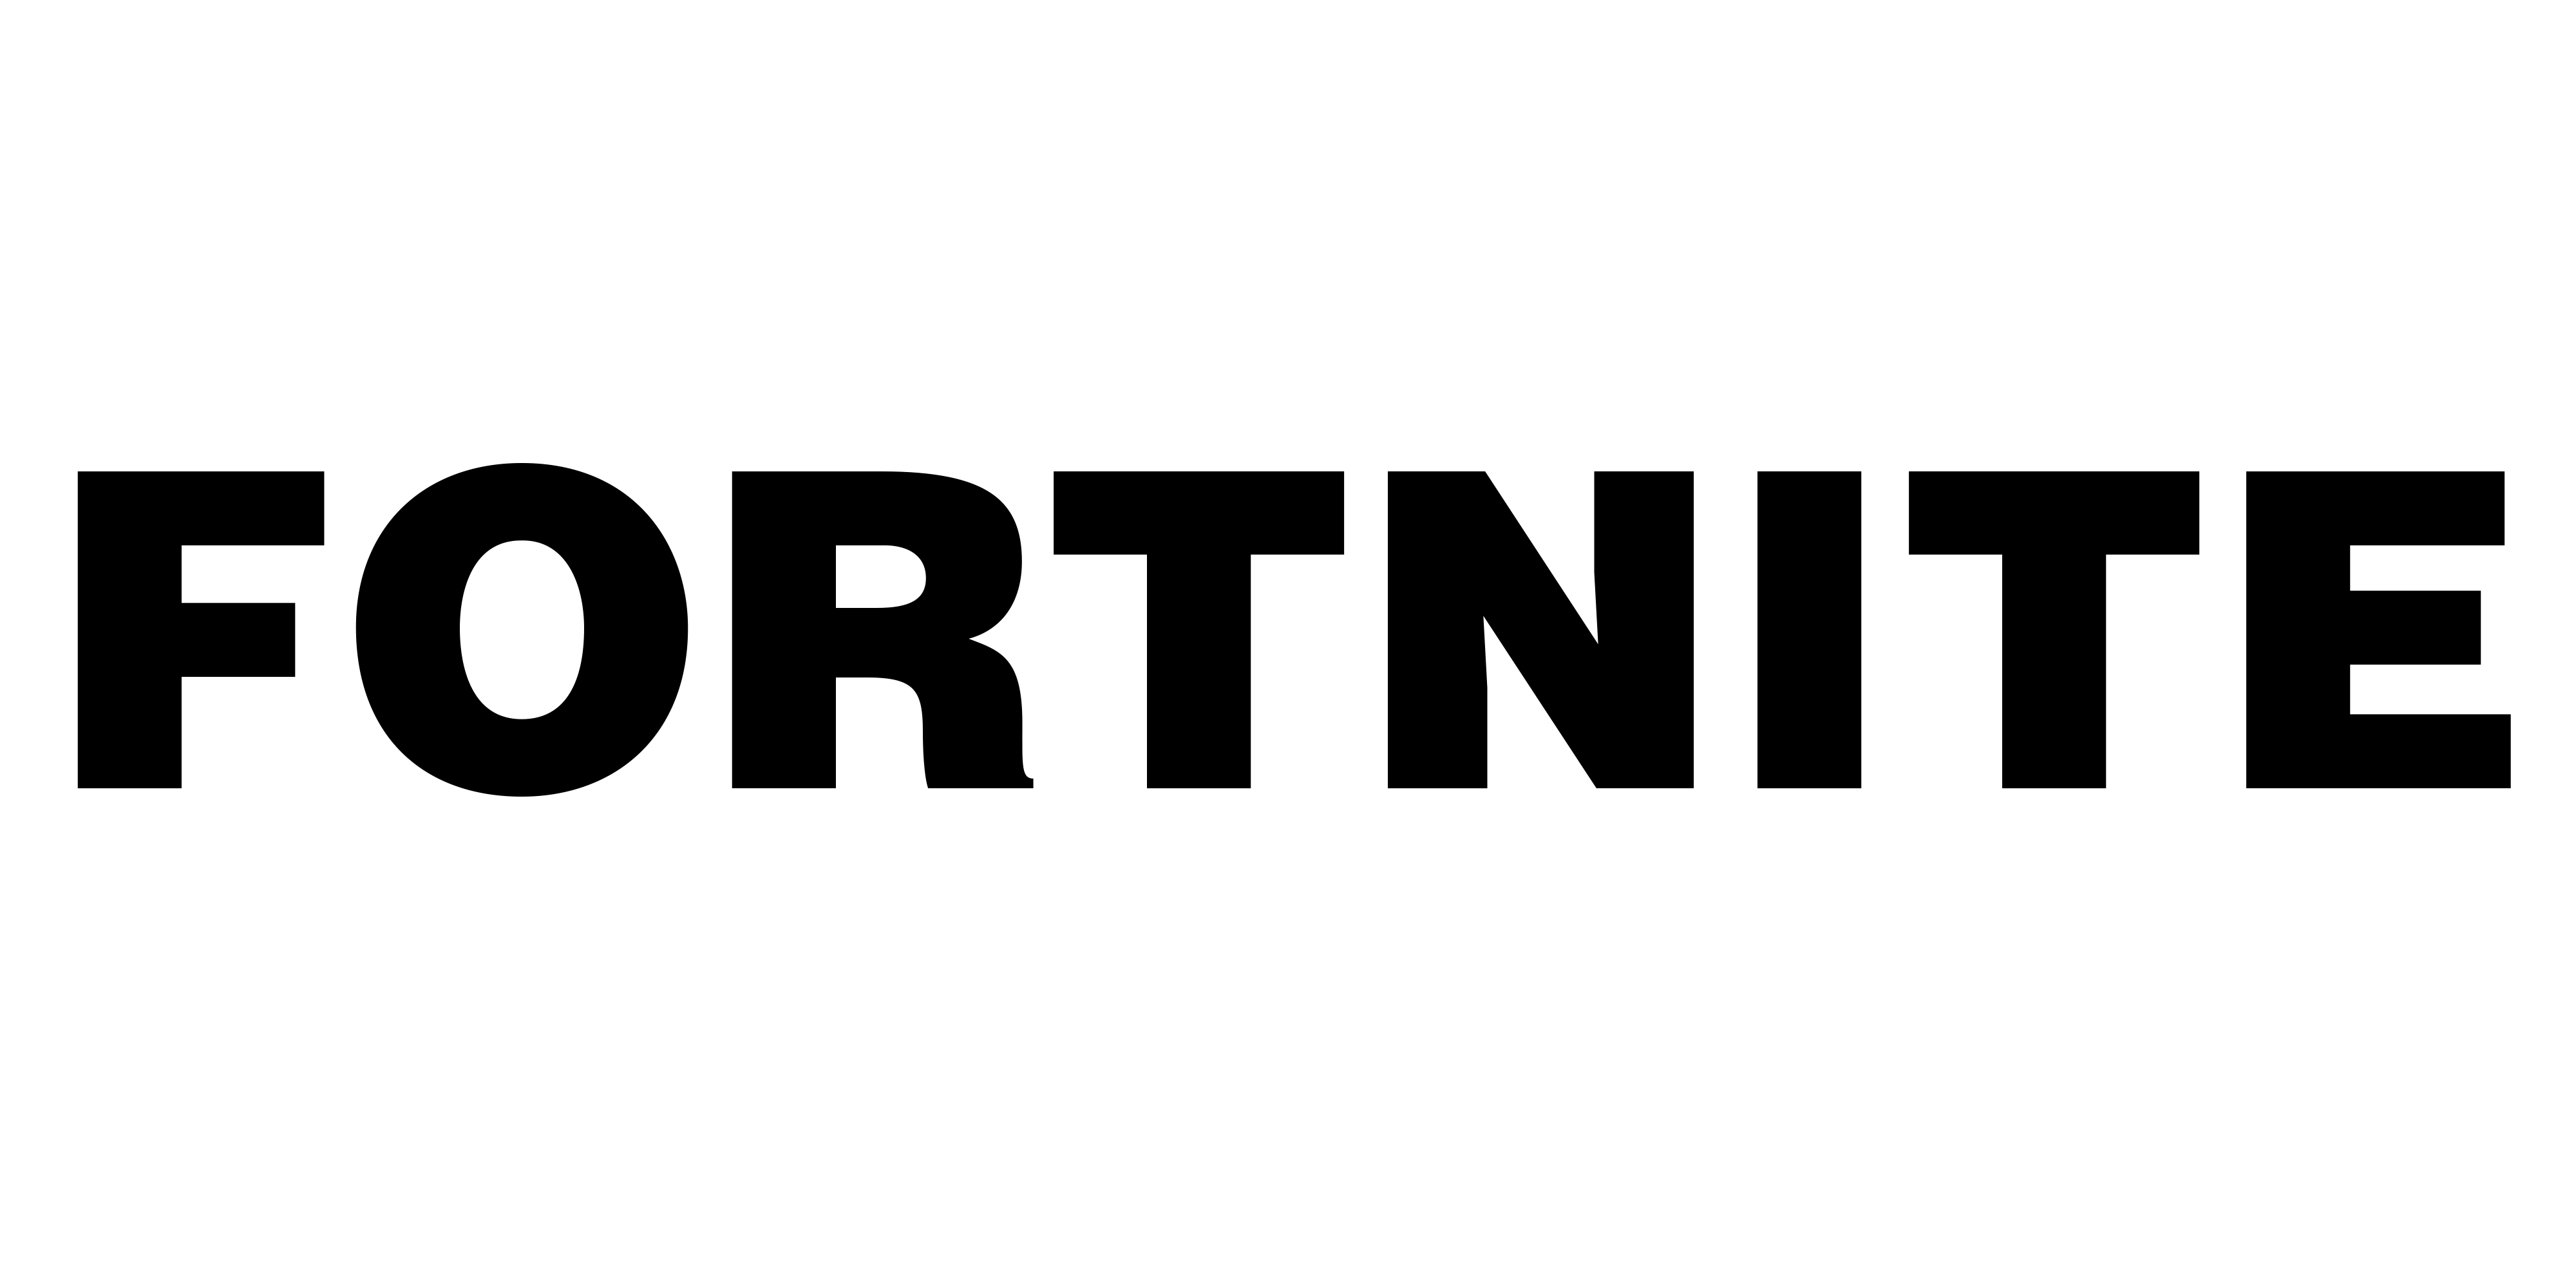 Fortnite Logo PNG Image